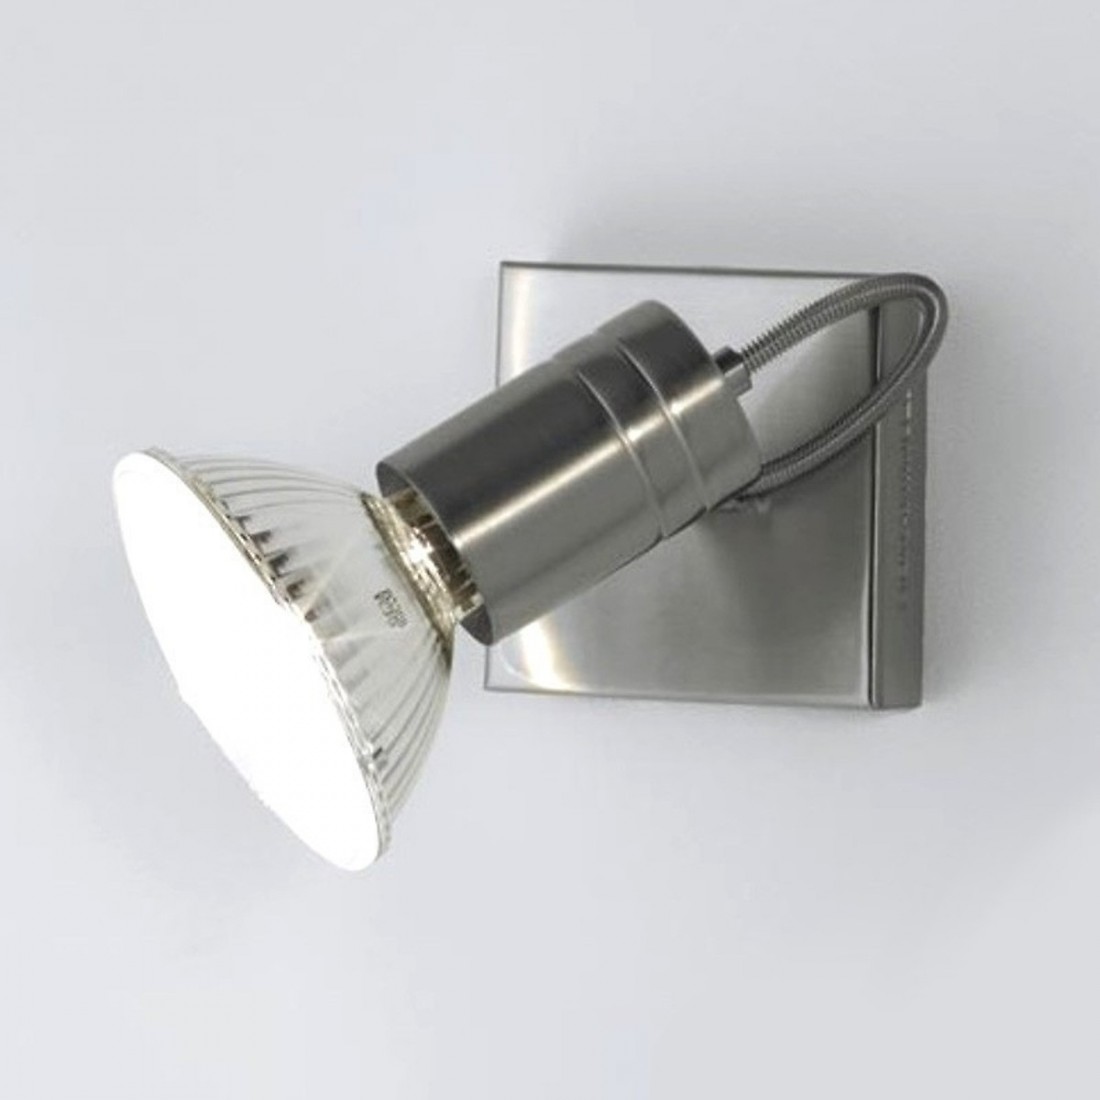 Redonner vie à un lampadaire halogène grâce aux ampoules LED